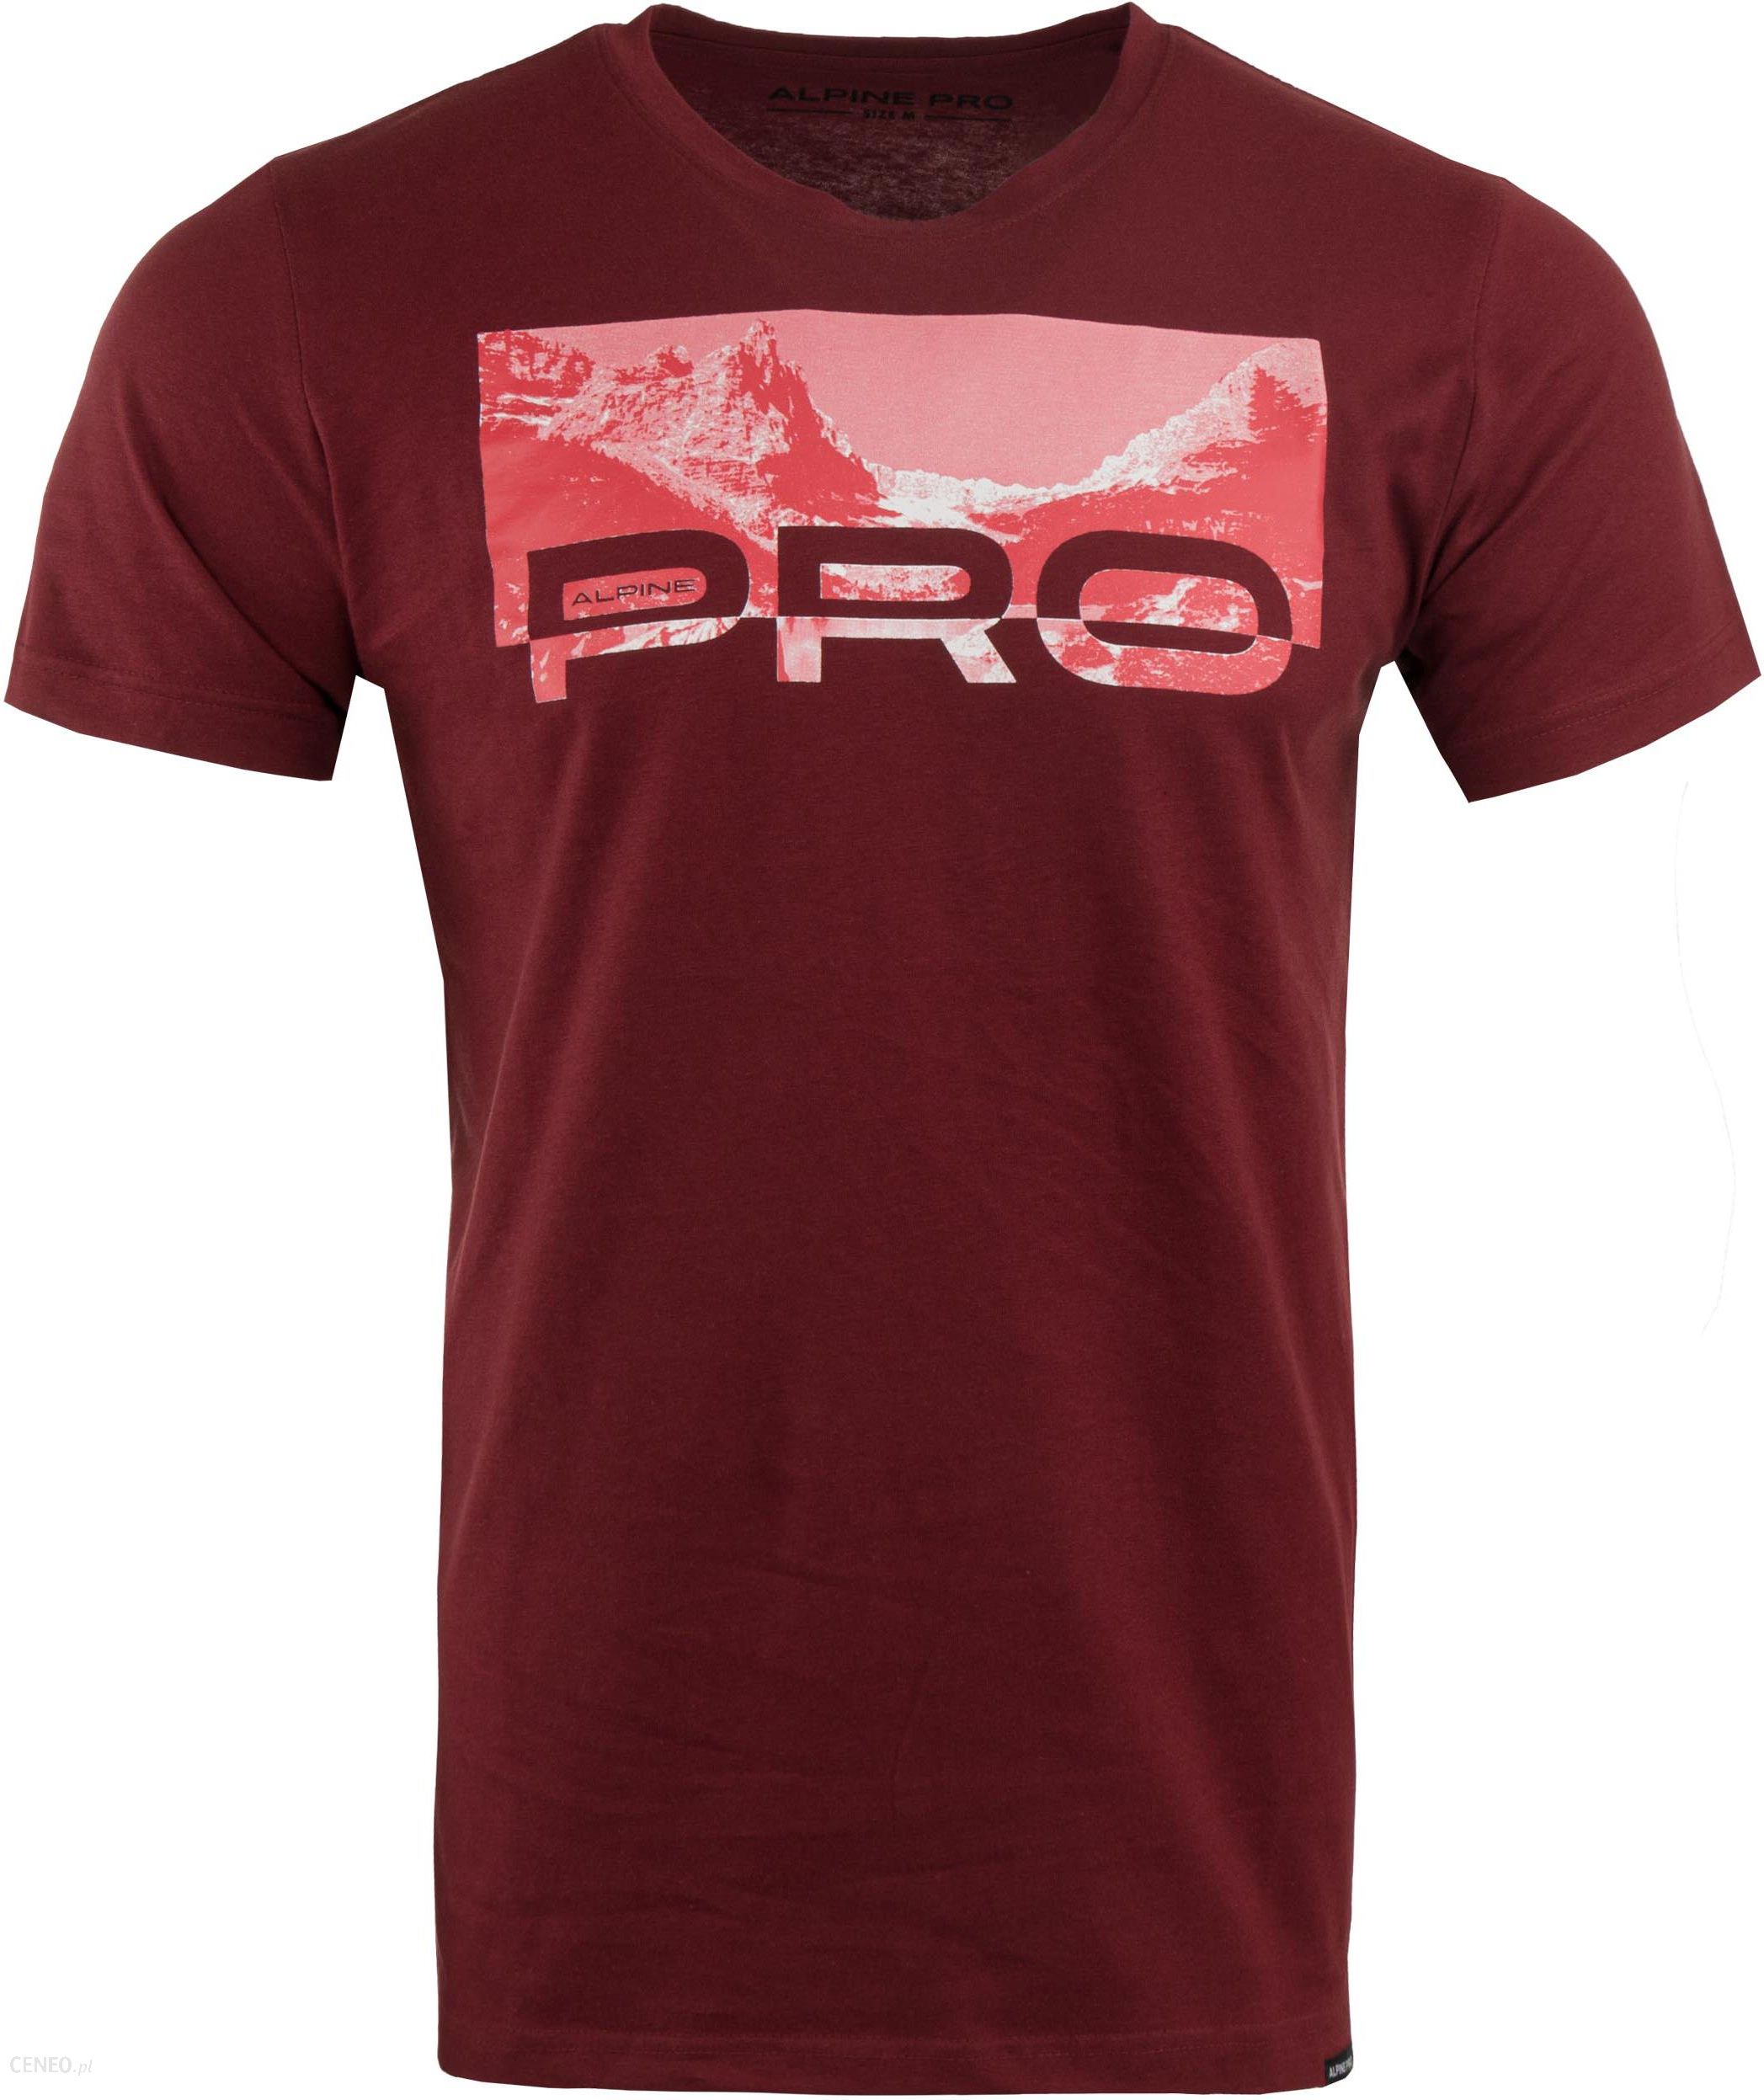 Alpine Pro T-Shirt Geter - Ceny i opinie - Ceneo.pl